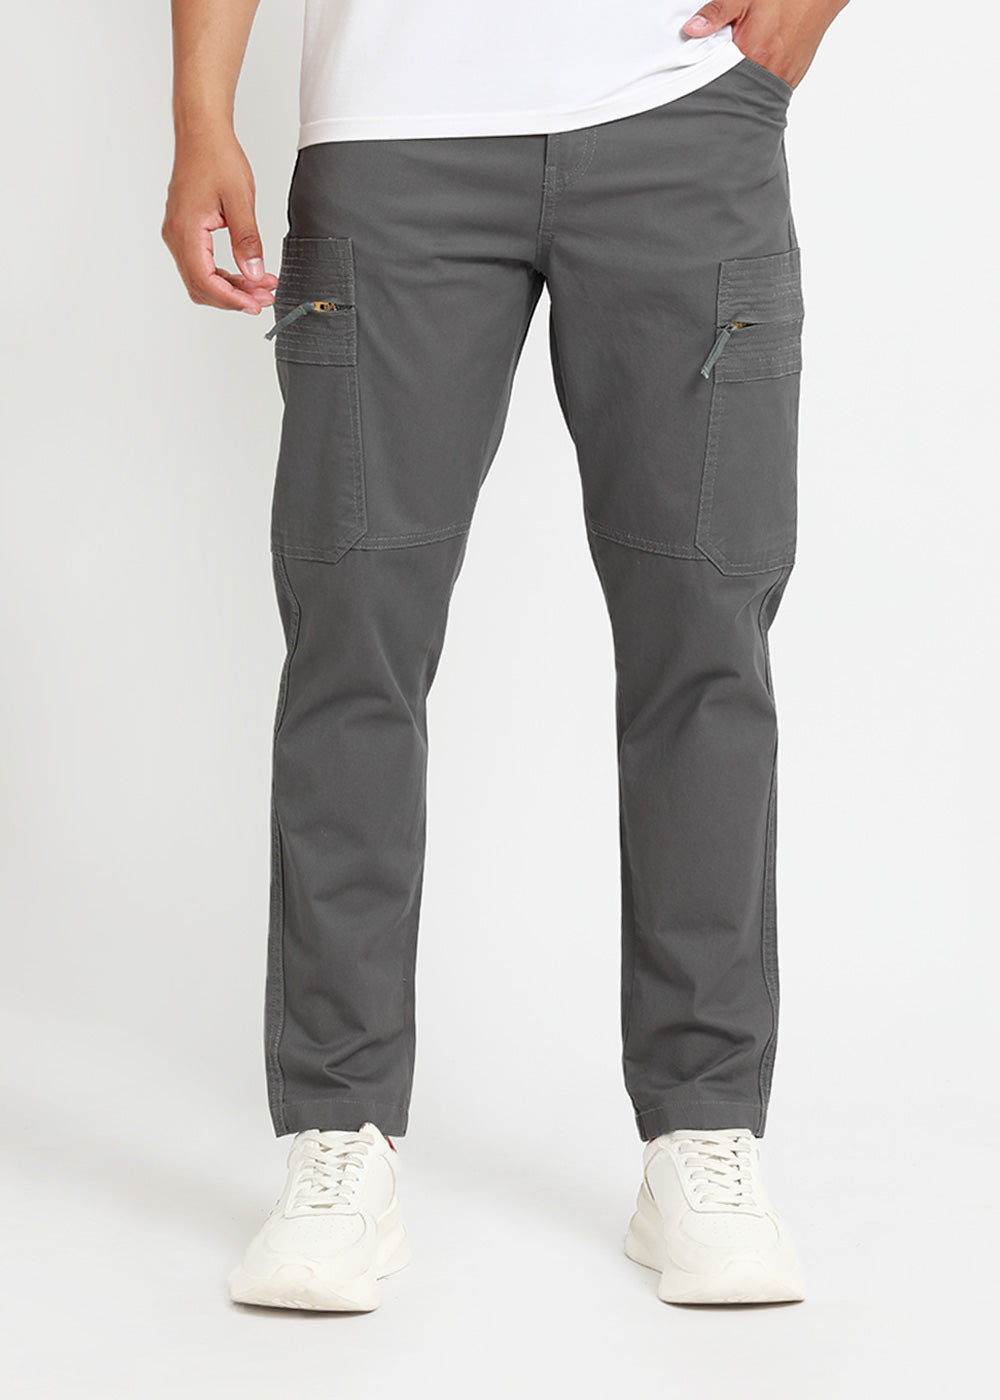 Meteor Grey Zip Cargo Pants